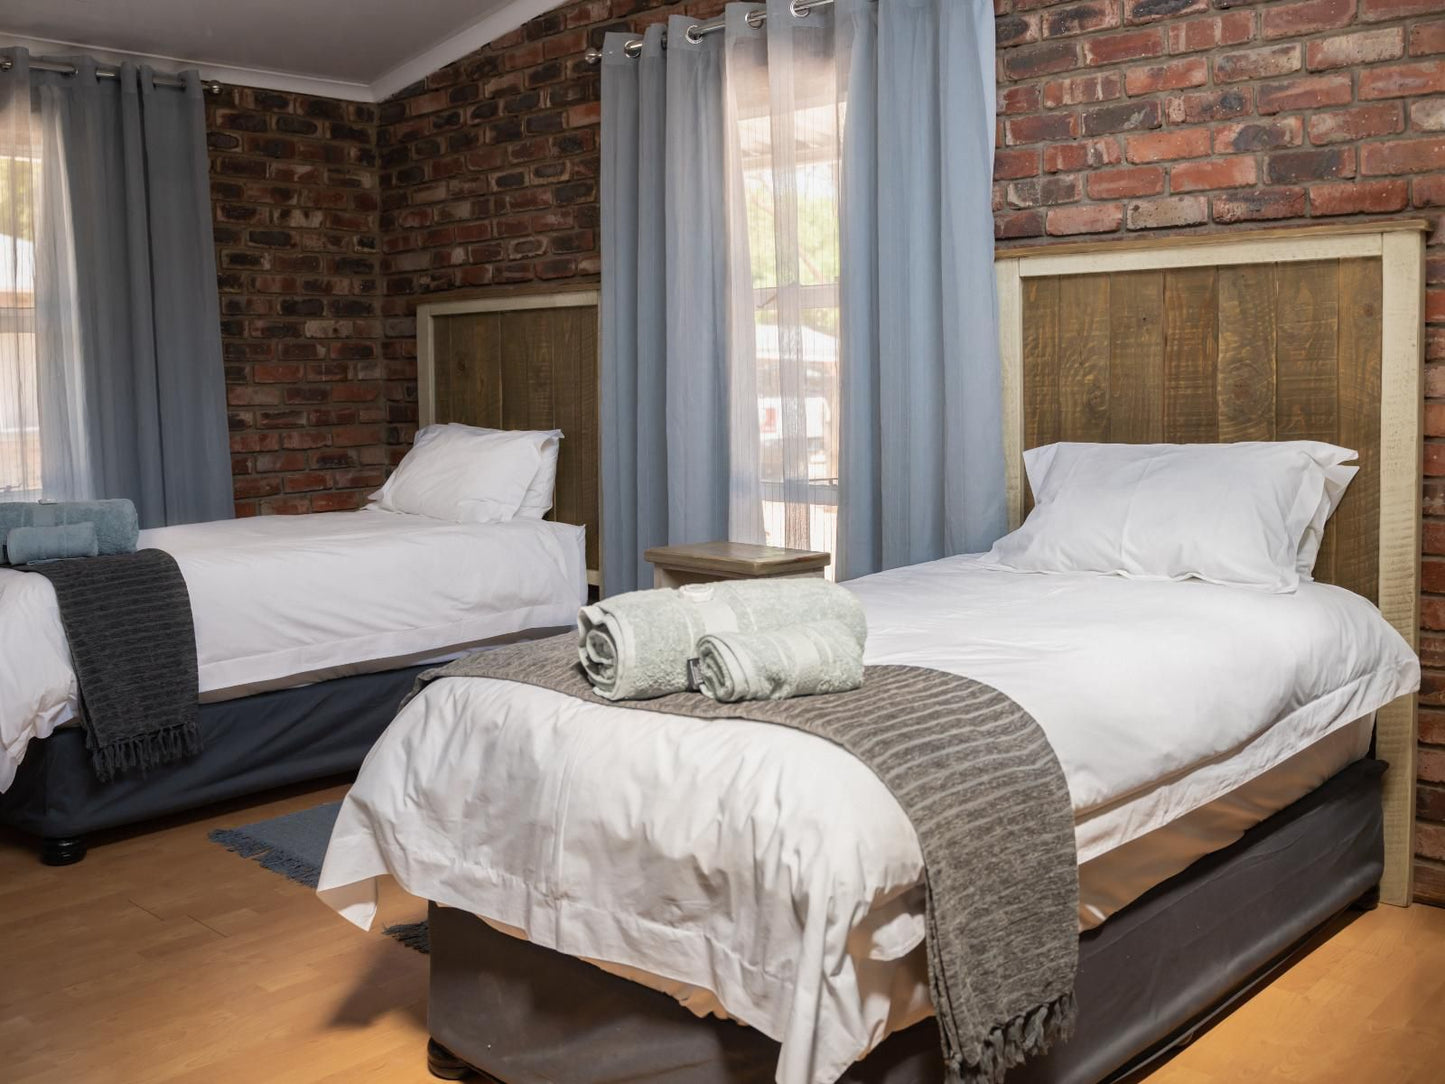 Opstal Guestfarm Potchefstroom North West Province South Africa Bedroom